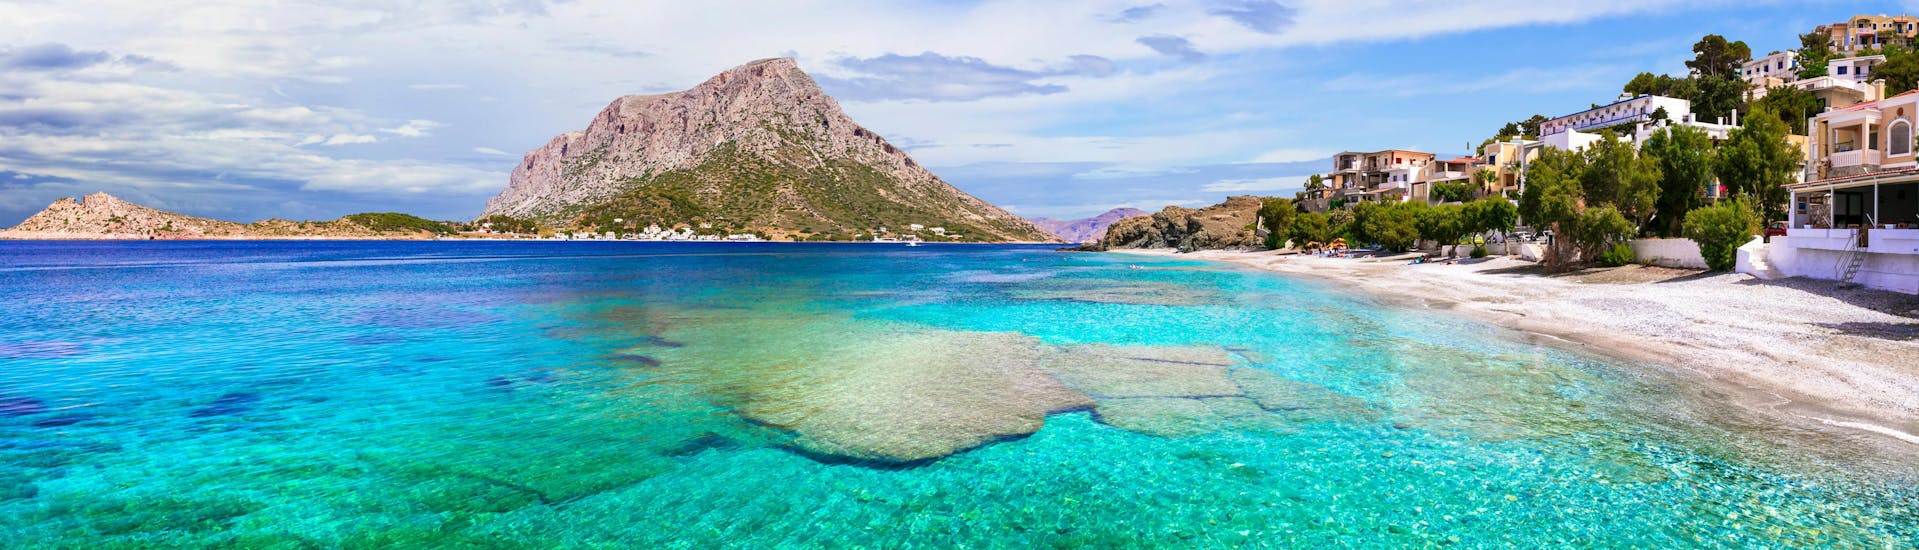 Vista su Kalymnos, un'isola bellissima che si può scoprire con una gita in barca.